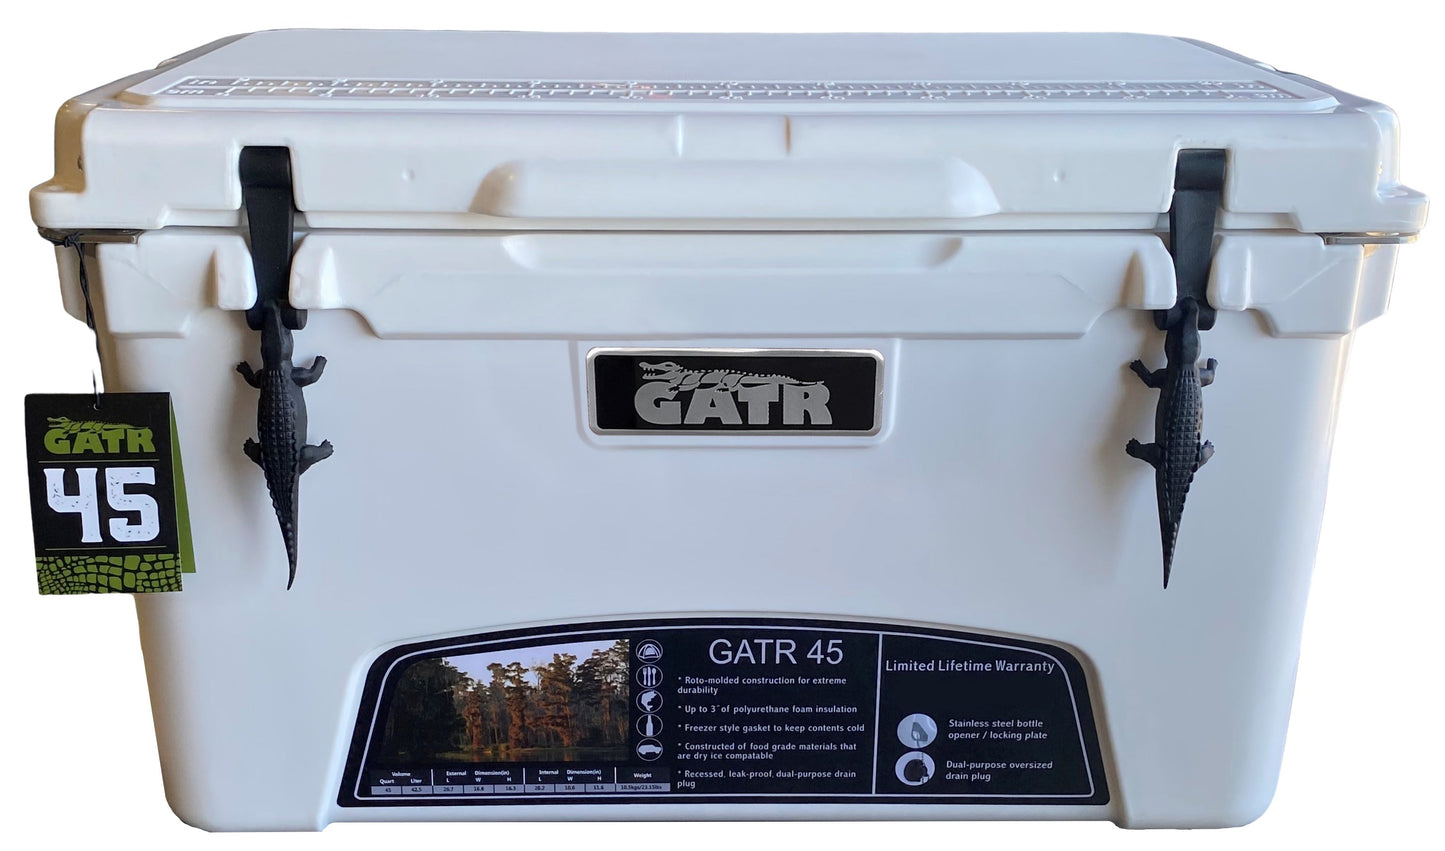 GATR 45 by GATR